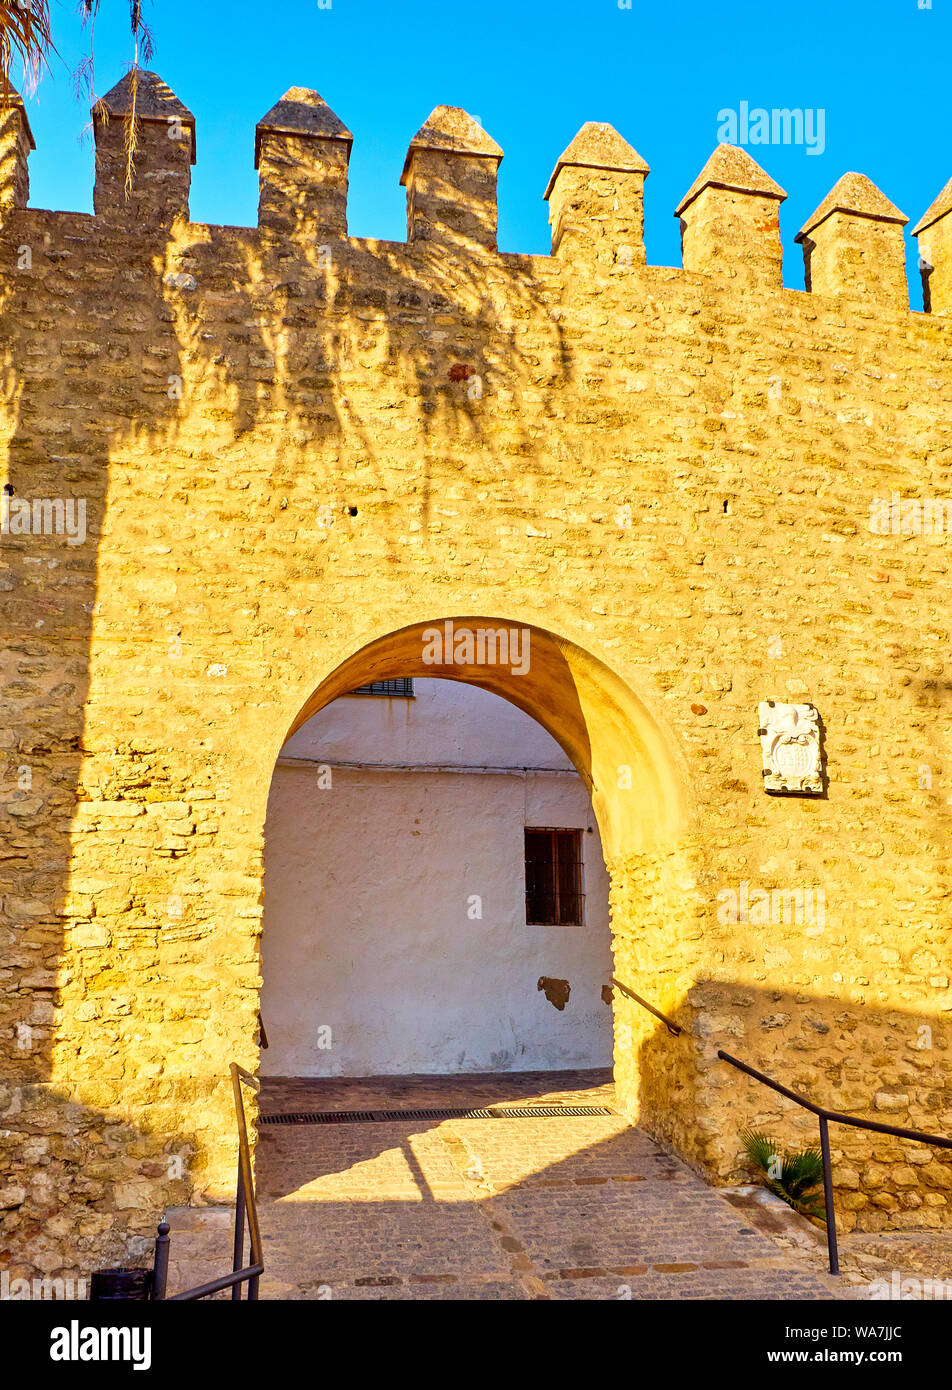 L'arc de la porte fermée, Arco de la Puerta Cerrada, dans le quartier juif de Vejer de la Frontera centre-ville. La province de Cádiz, Andalousie, espagne. Banque D'Images